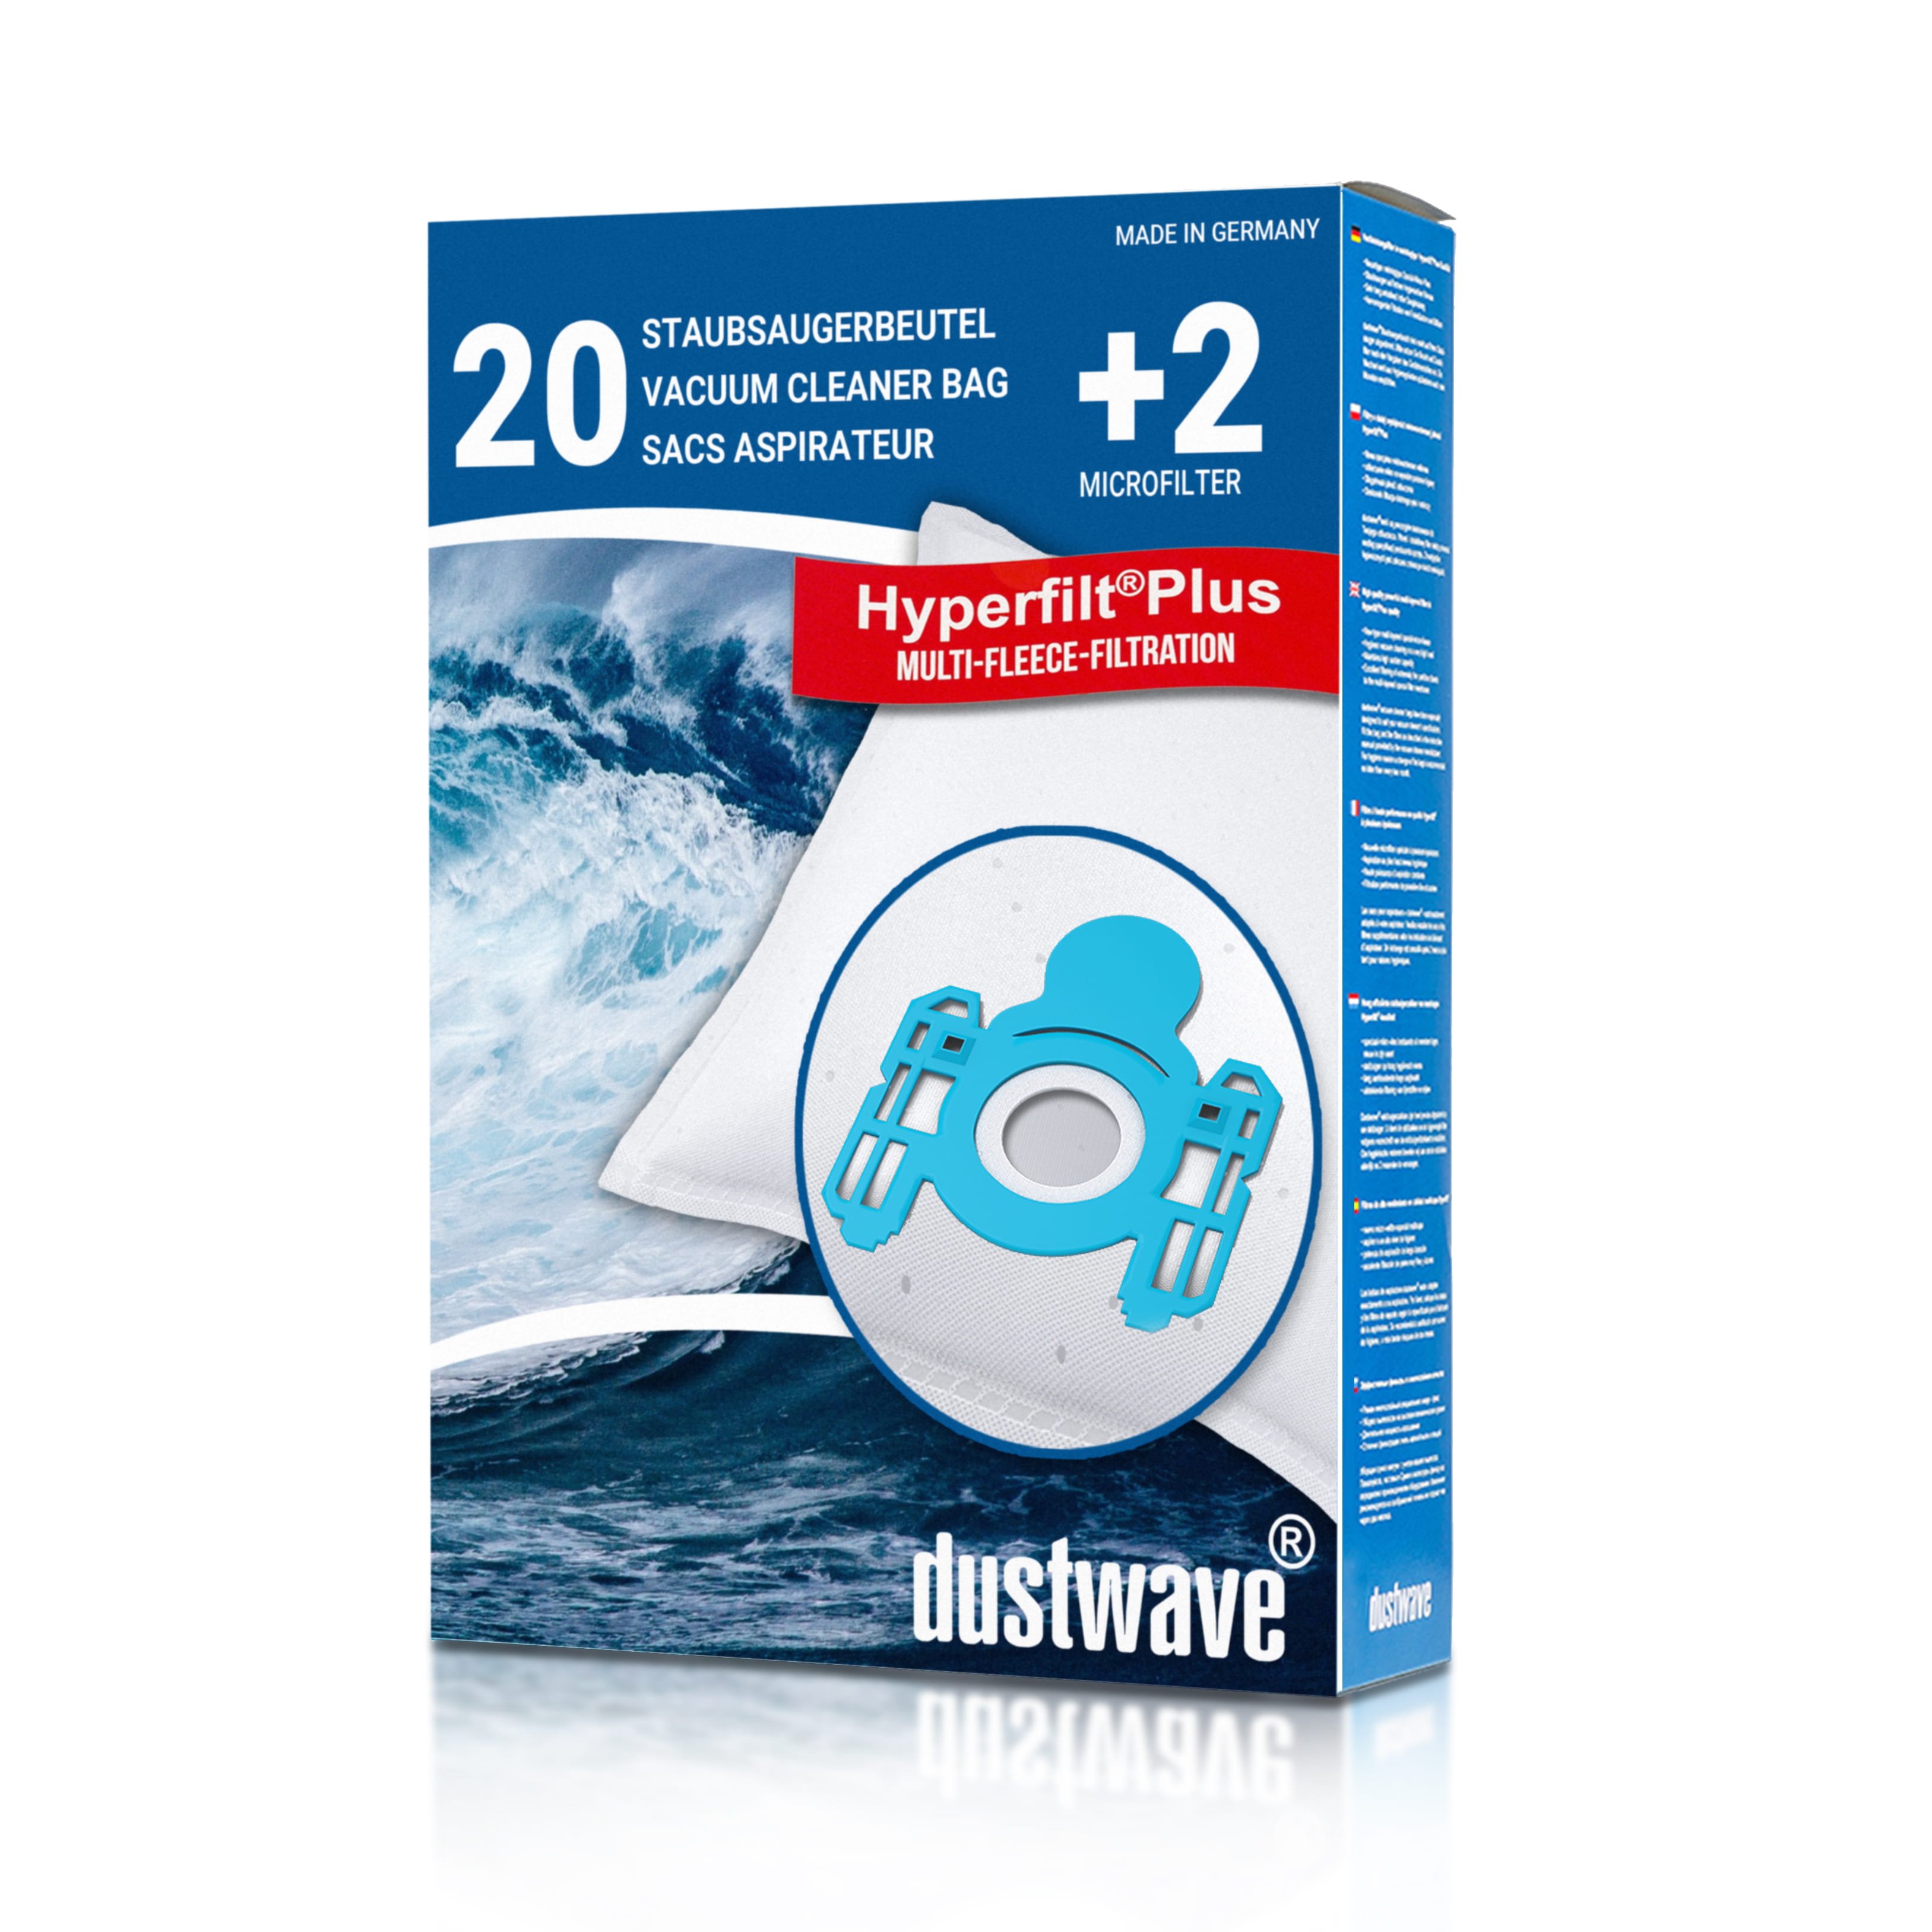 Dustwave® 20 Staubsaugerbeutel für AEG E 180 Turbo - hocheffizient, mehrlagiges Mikrovlies mit Hygieneverschluss - Made in Germany